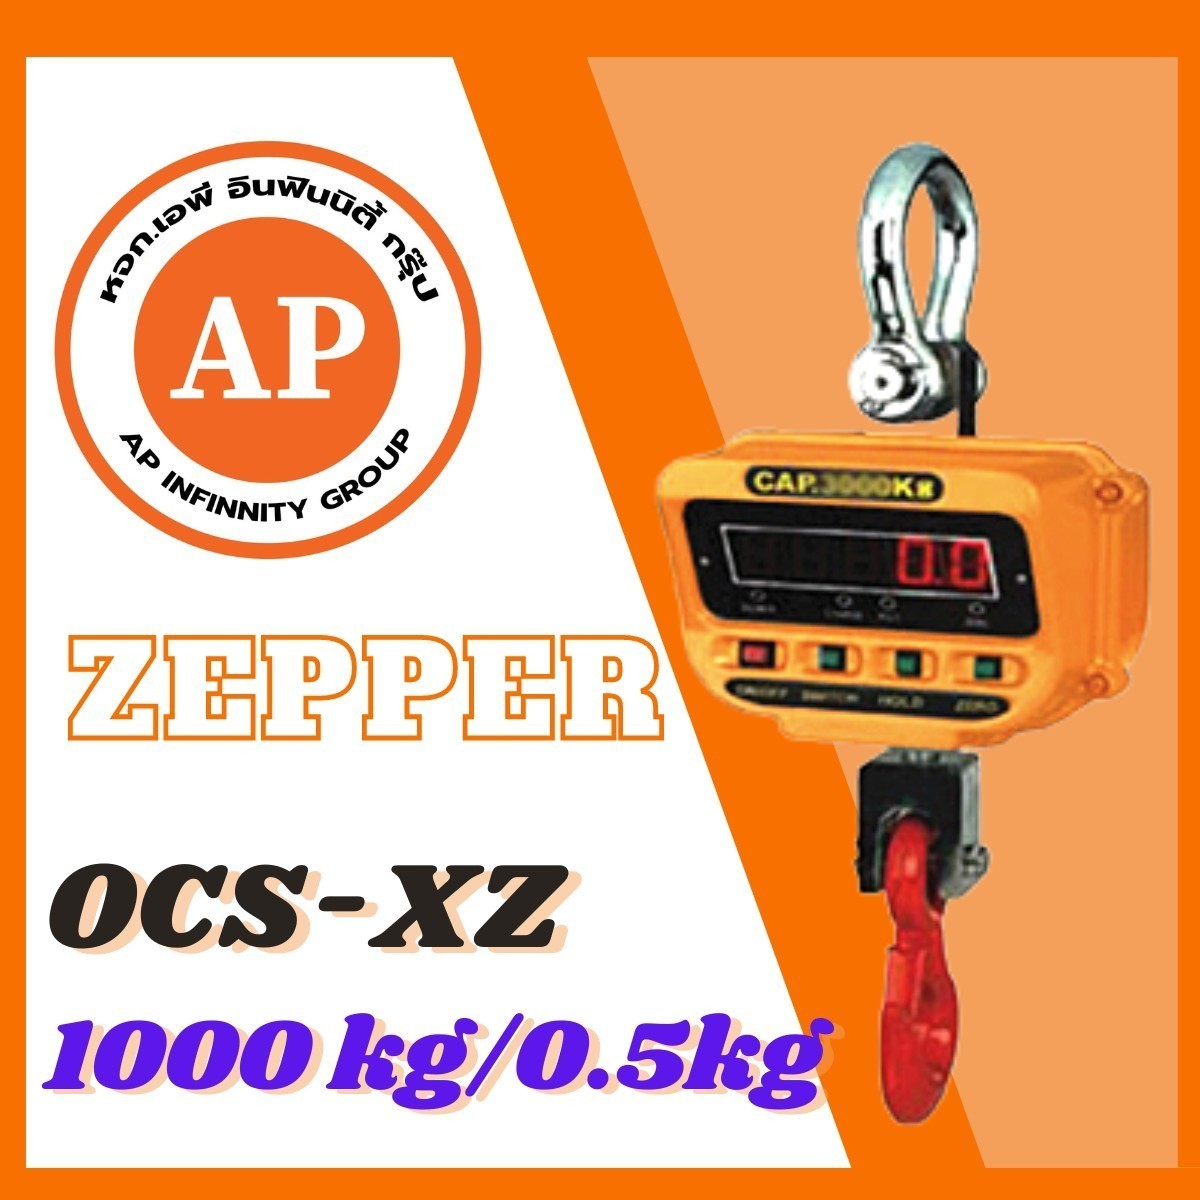 ตาชั่งแขวนดิจิตอล เครื่องชั่งแขวนดิจิตอล เครื่องชั่งแขวน 1000kg ความละเอียด 0.5kg ZEPPER OCS-XZ1000kg  รูปที่ 1